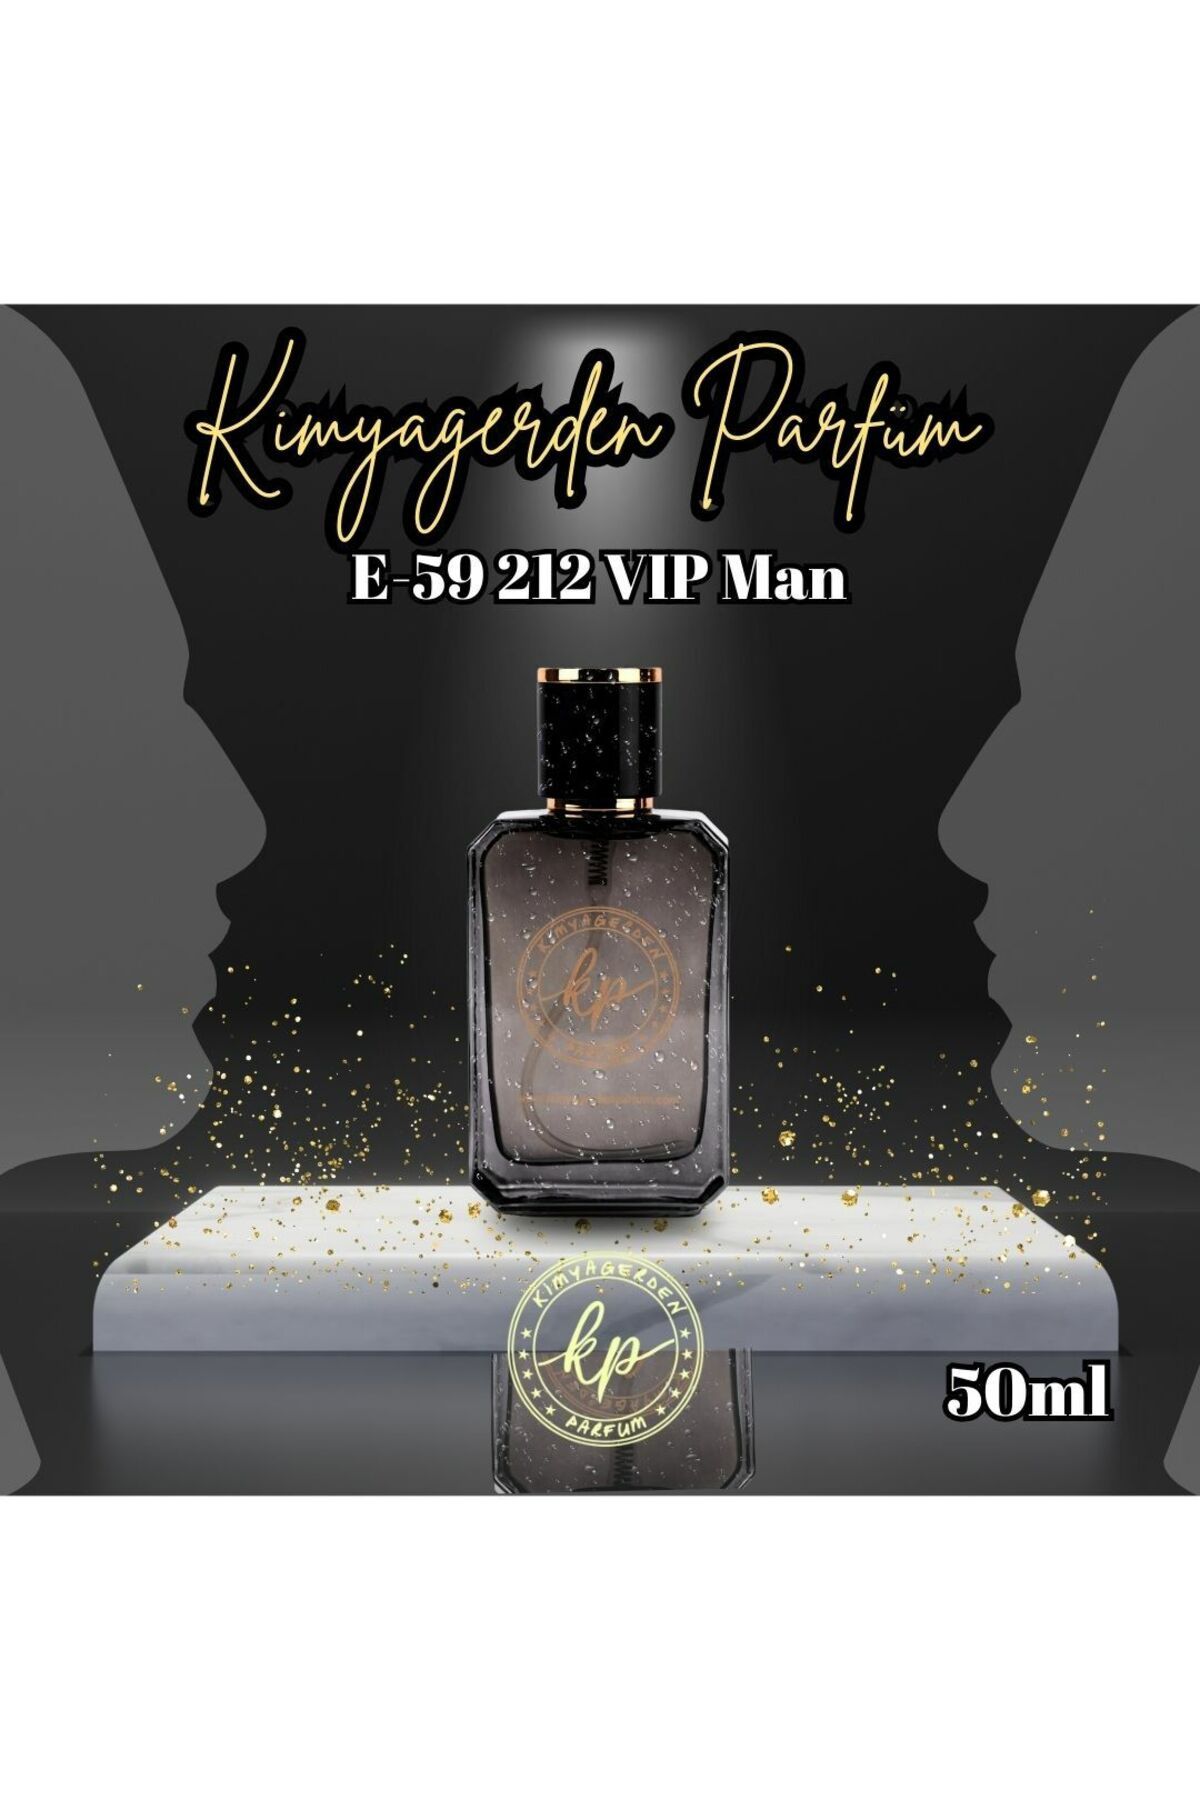 kp kimyagerden parfüm E-59 212 VIP Man - 50 ml